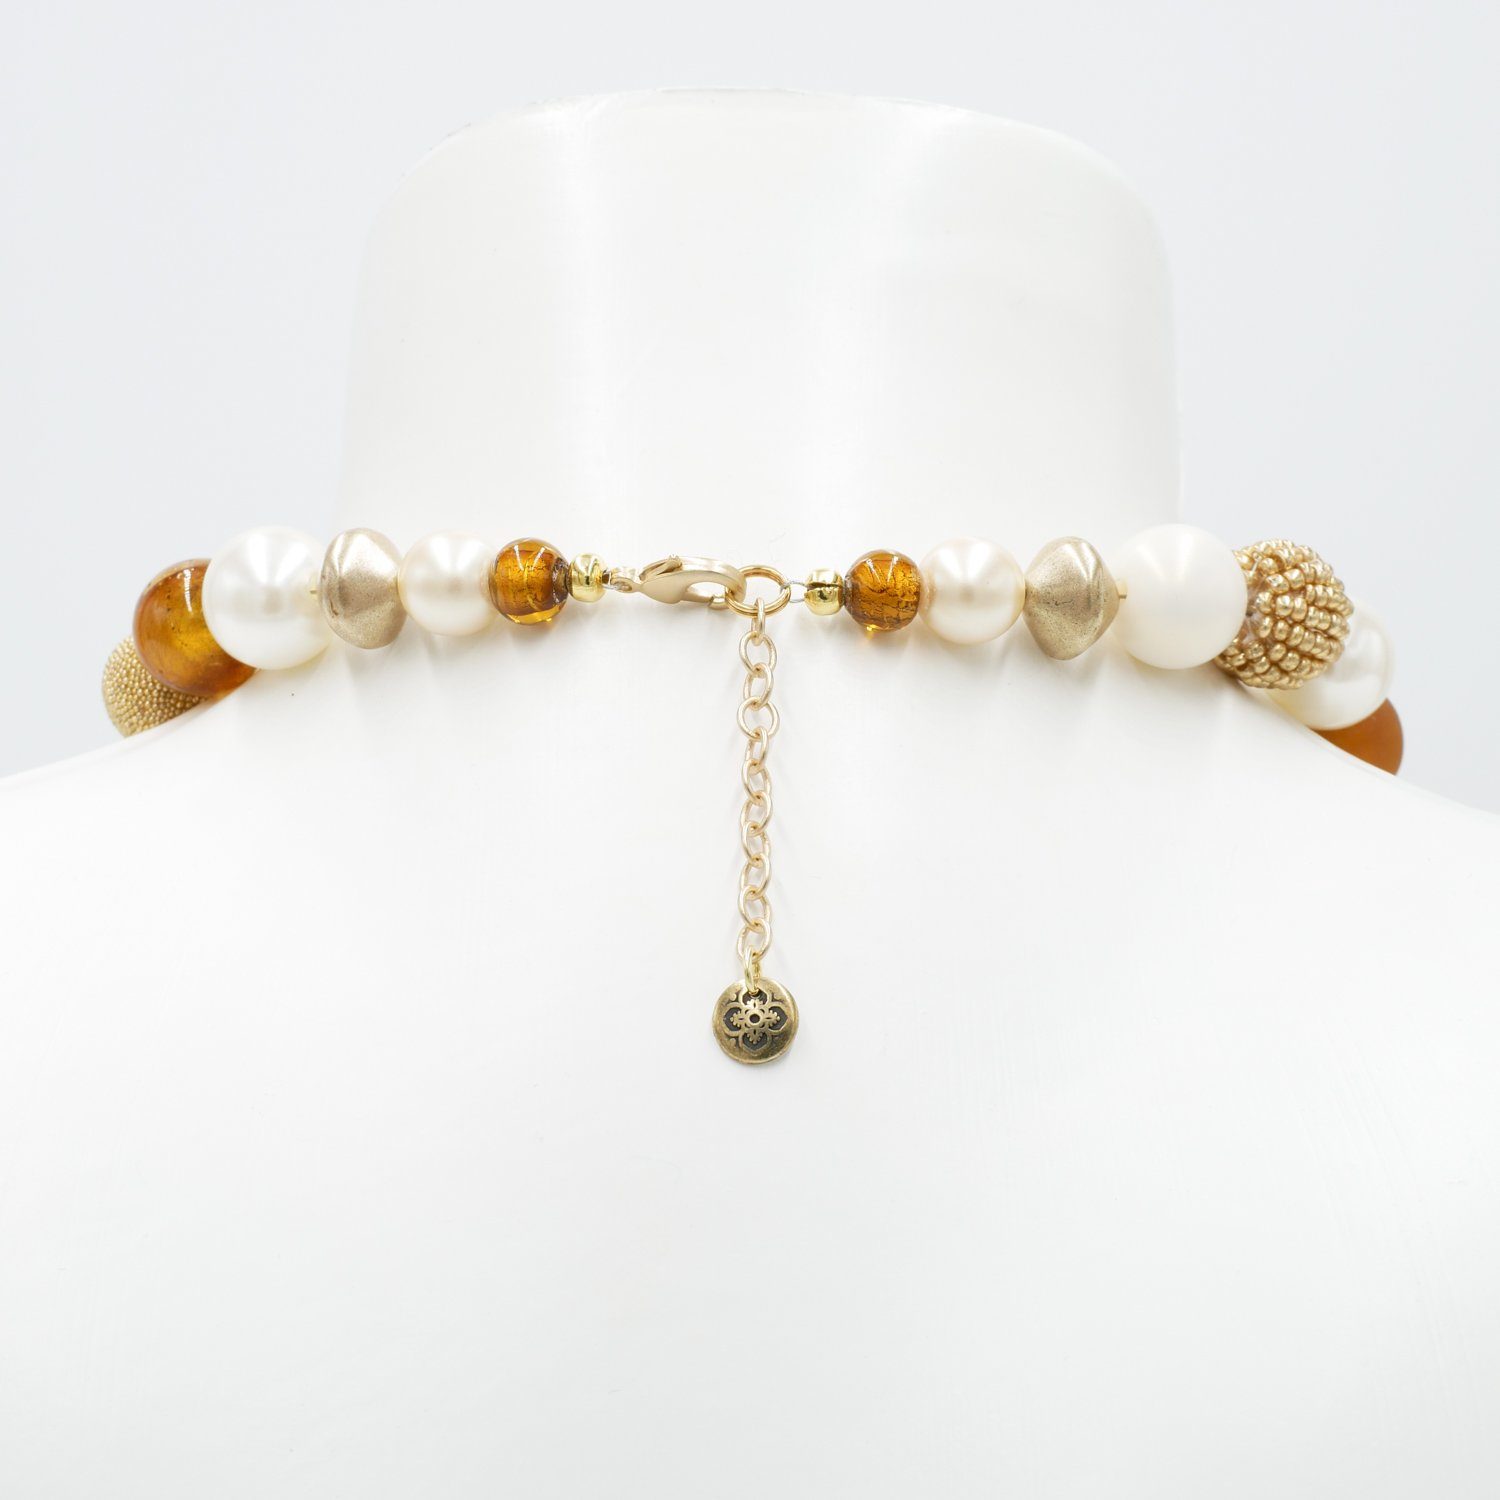 Damen Schmuck Feliss Perlenkette Amber Passion, 45 cm lang, Kette für Damen, Made in Germany, mit Glas- und Keramik, Unikat, Sta